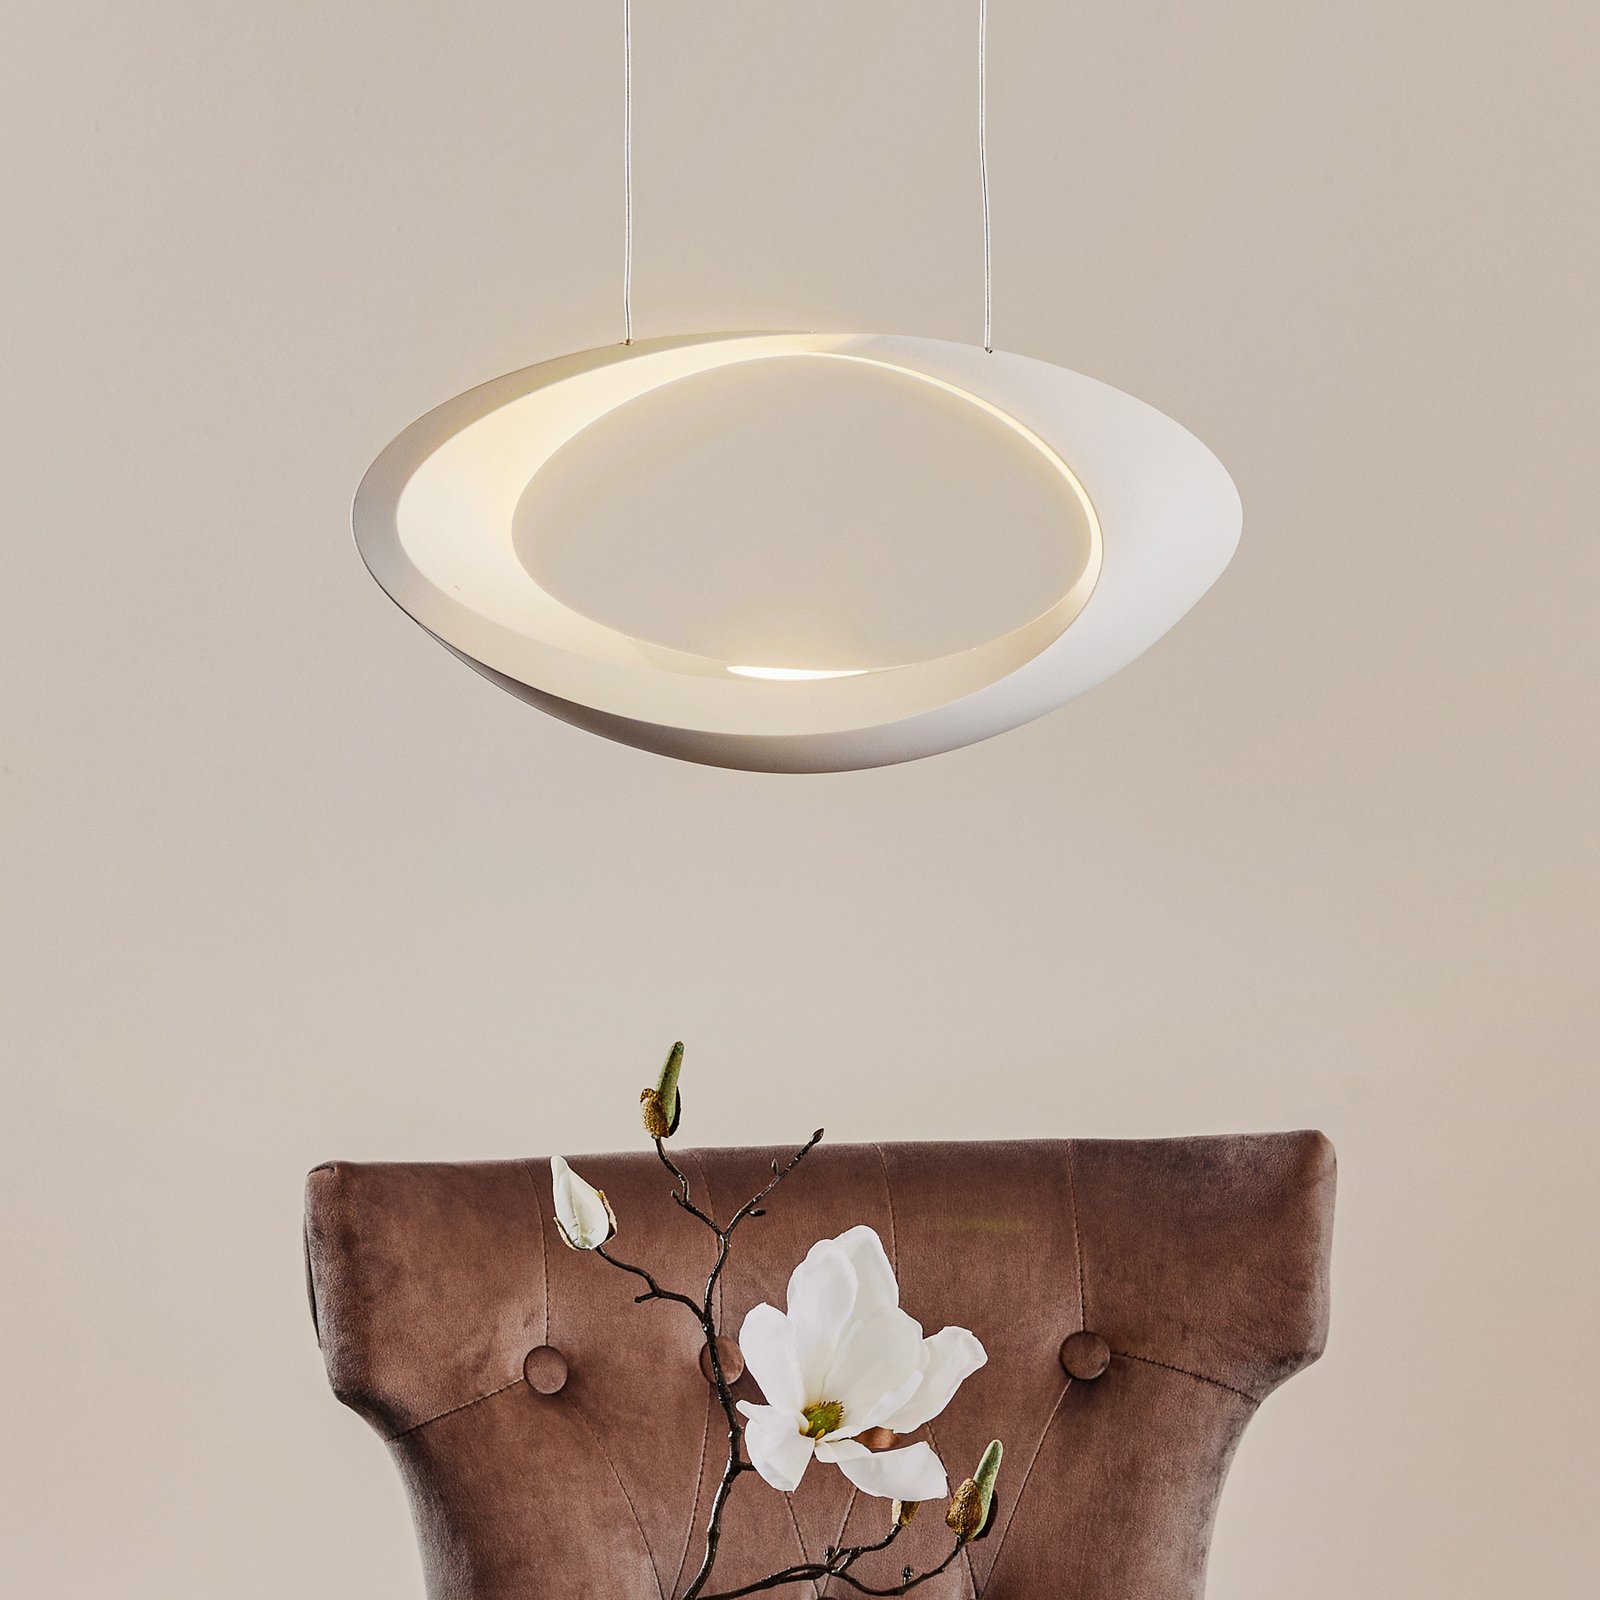 Cabildo white designer LED hanging light, 2,700 K